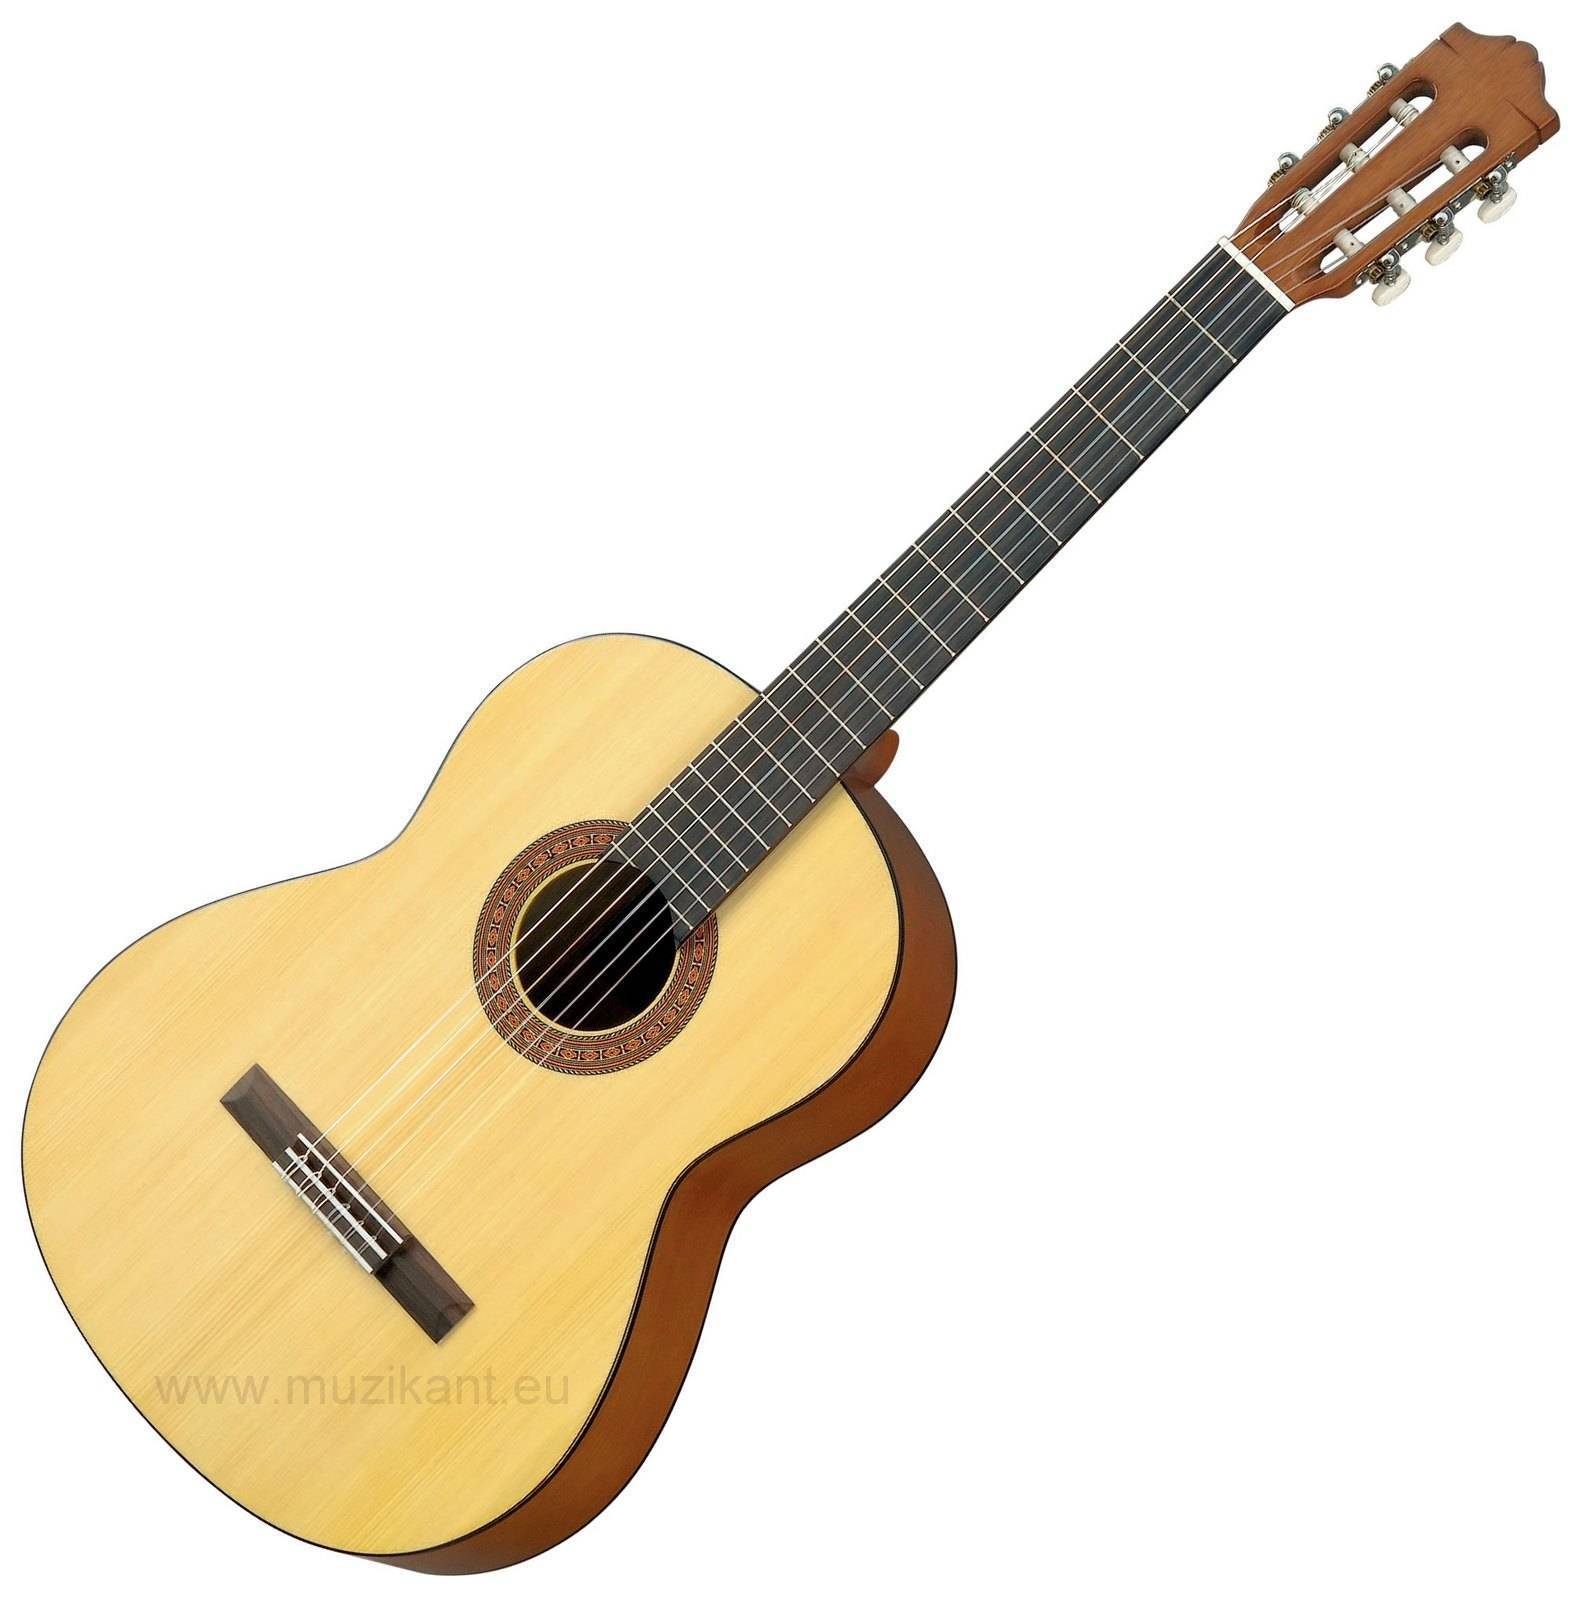 Yamaha C40M Classical guitar